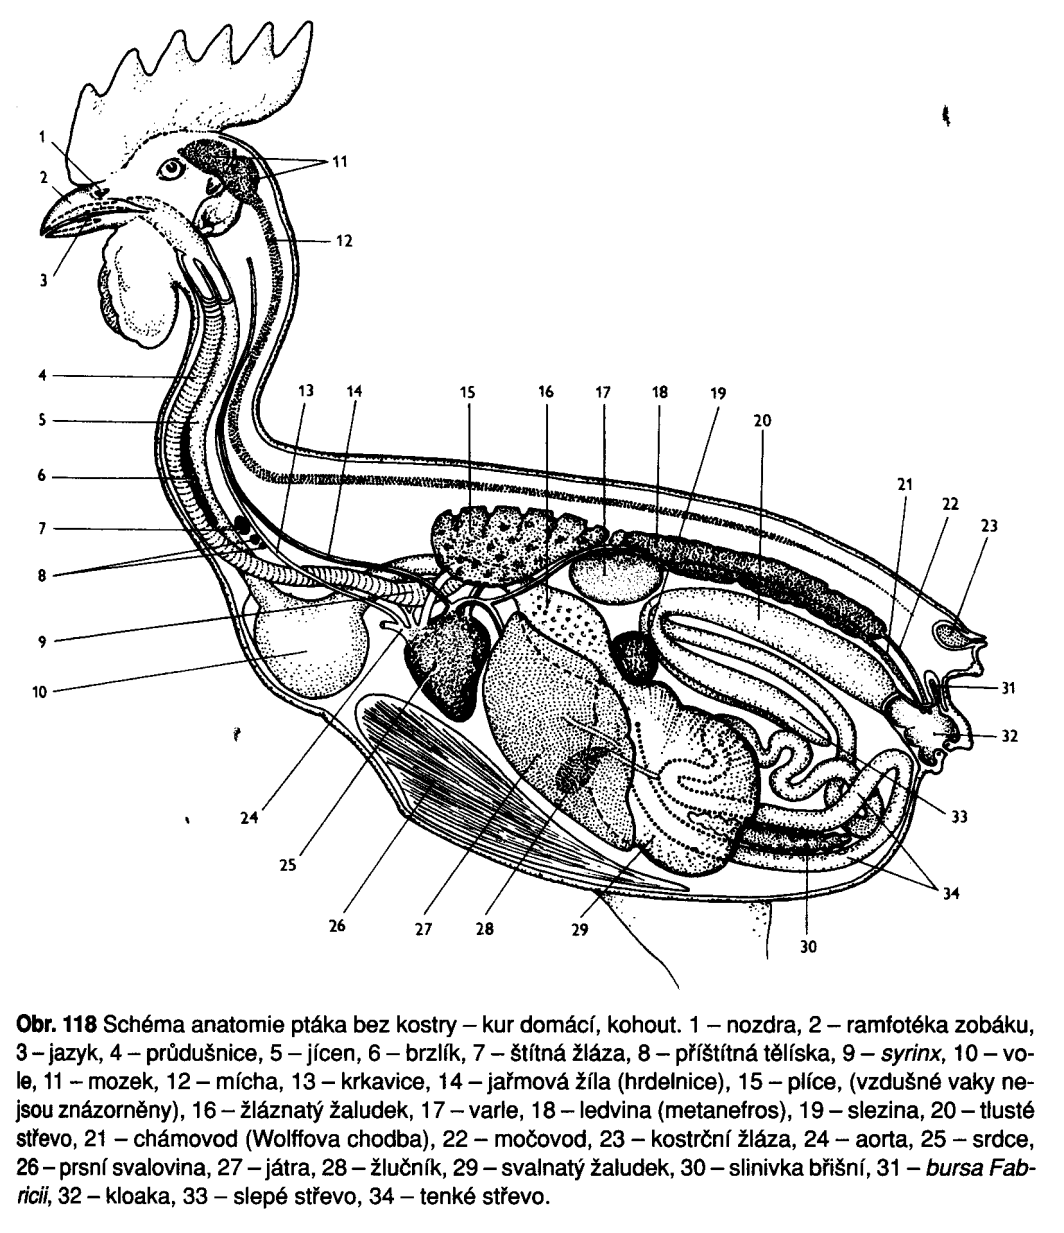 Trávicí soustava má zvláštnosti: a) v ústní dutině (bezzubá) b) v jícnu - někdy vole (ingluvies) c) v ţaludku - ţlaznatý proventriculus (HCl + pepsin) - svalnatý ventriculus s útvary pro drcení